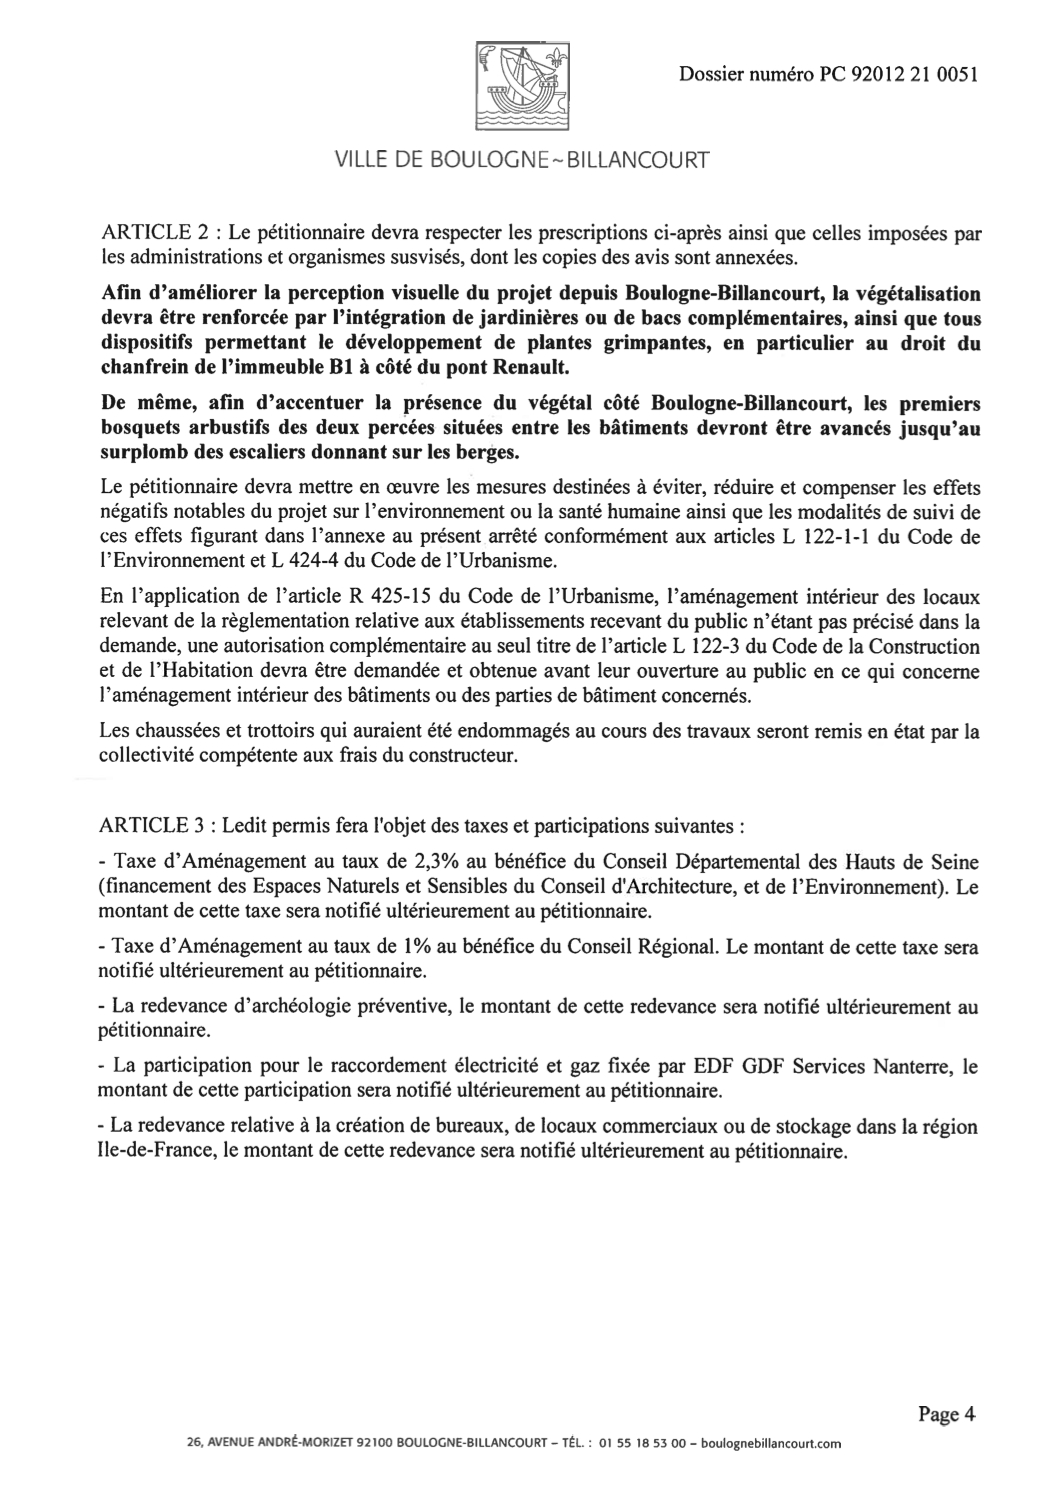 Arrêté du Permis construire Bouygues-Vivaldi N°92012 21 0051 Article 2 et 3 page 4